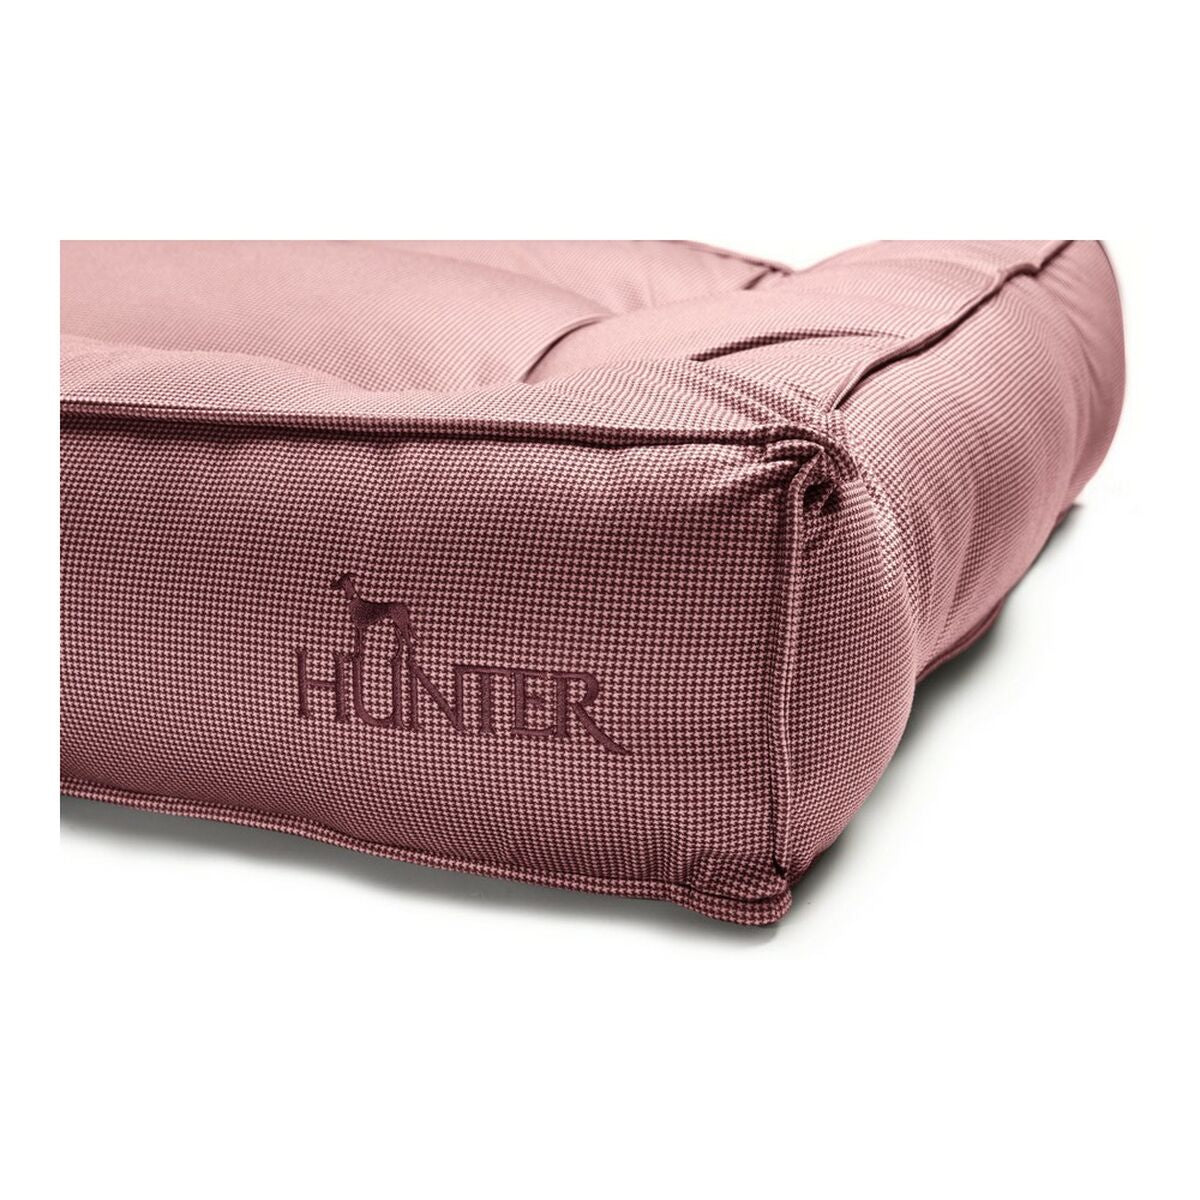 Cama para perros Hunter Lancaster de color rojo 100 x 70 cm